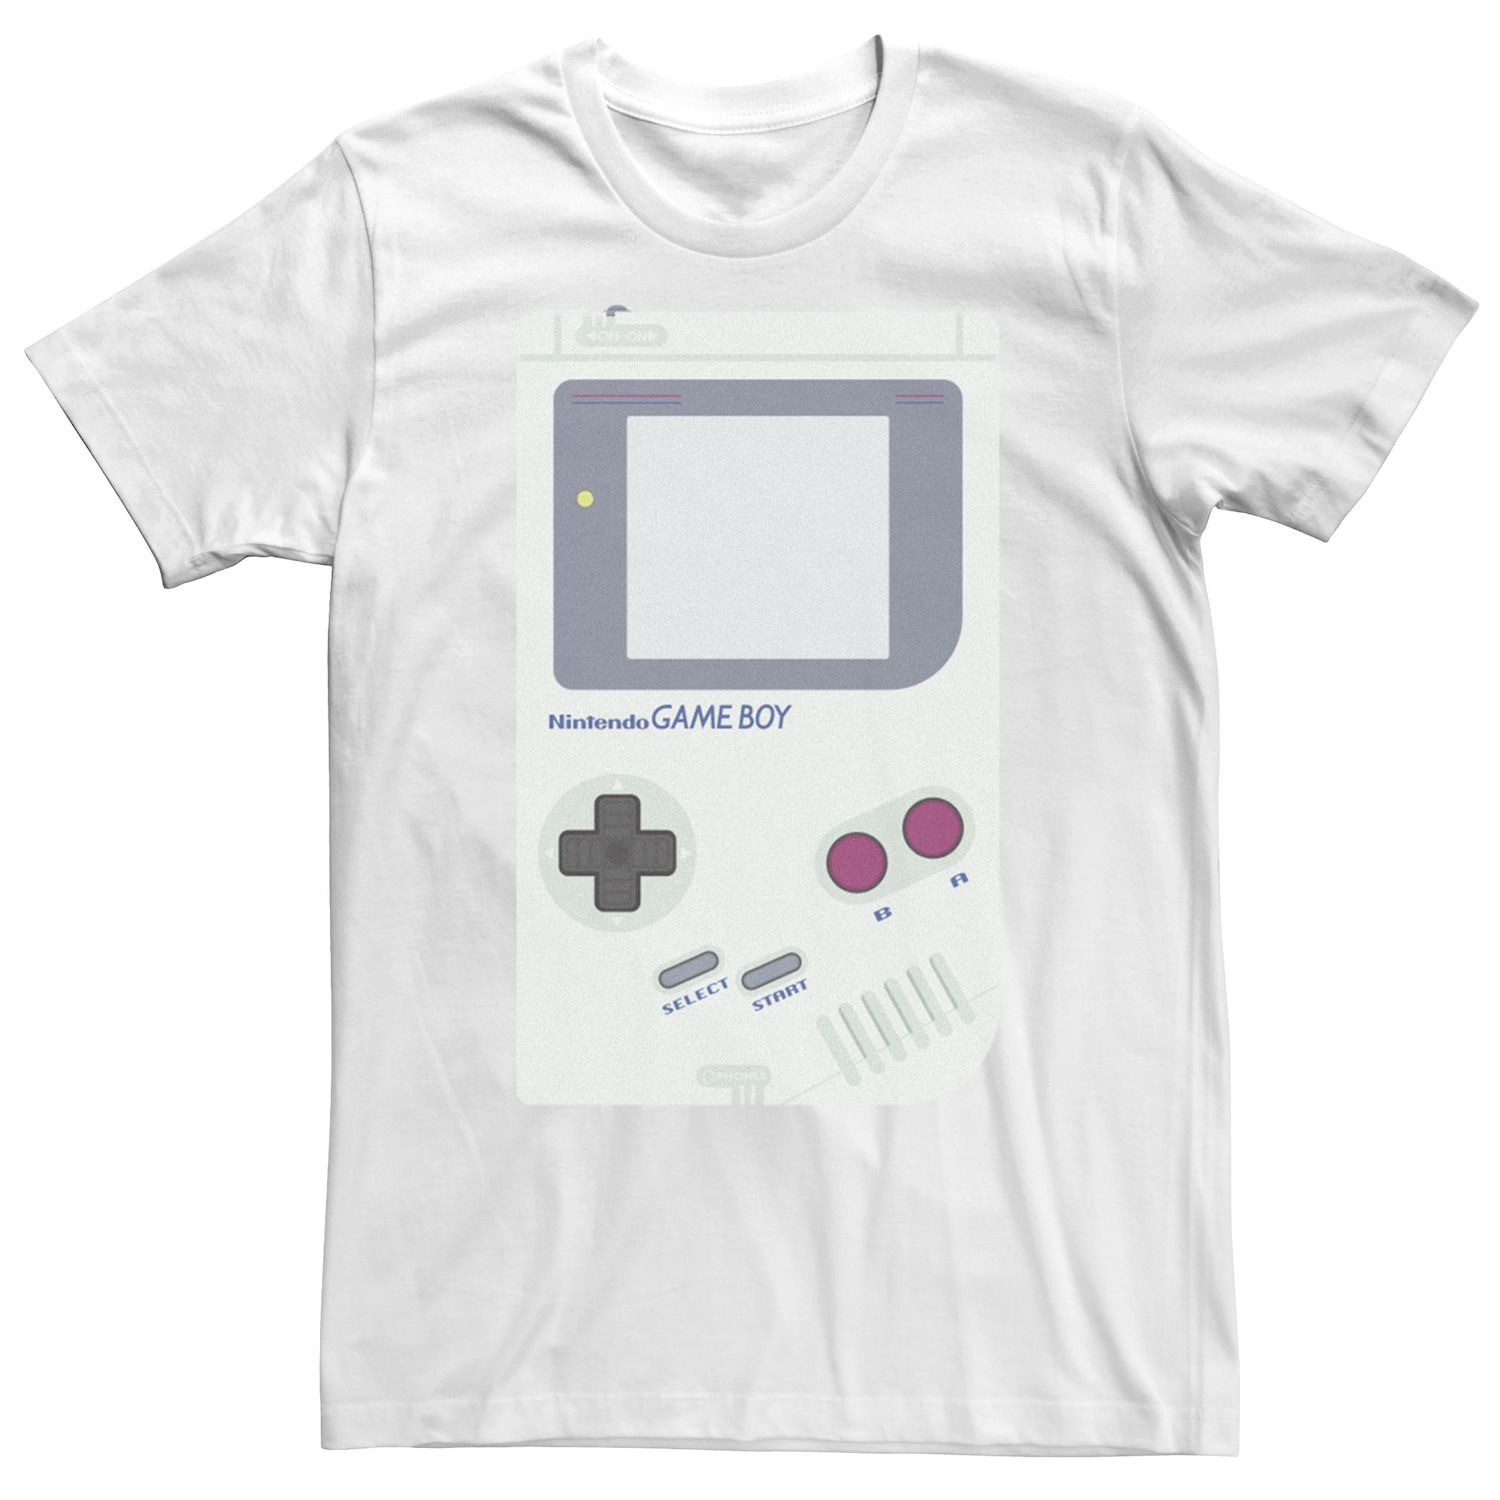 Мужская футболка для портативной консоли Nintendo Game Boy Licensed Character, белый аксессуар для портативной консоли nintendo game